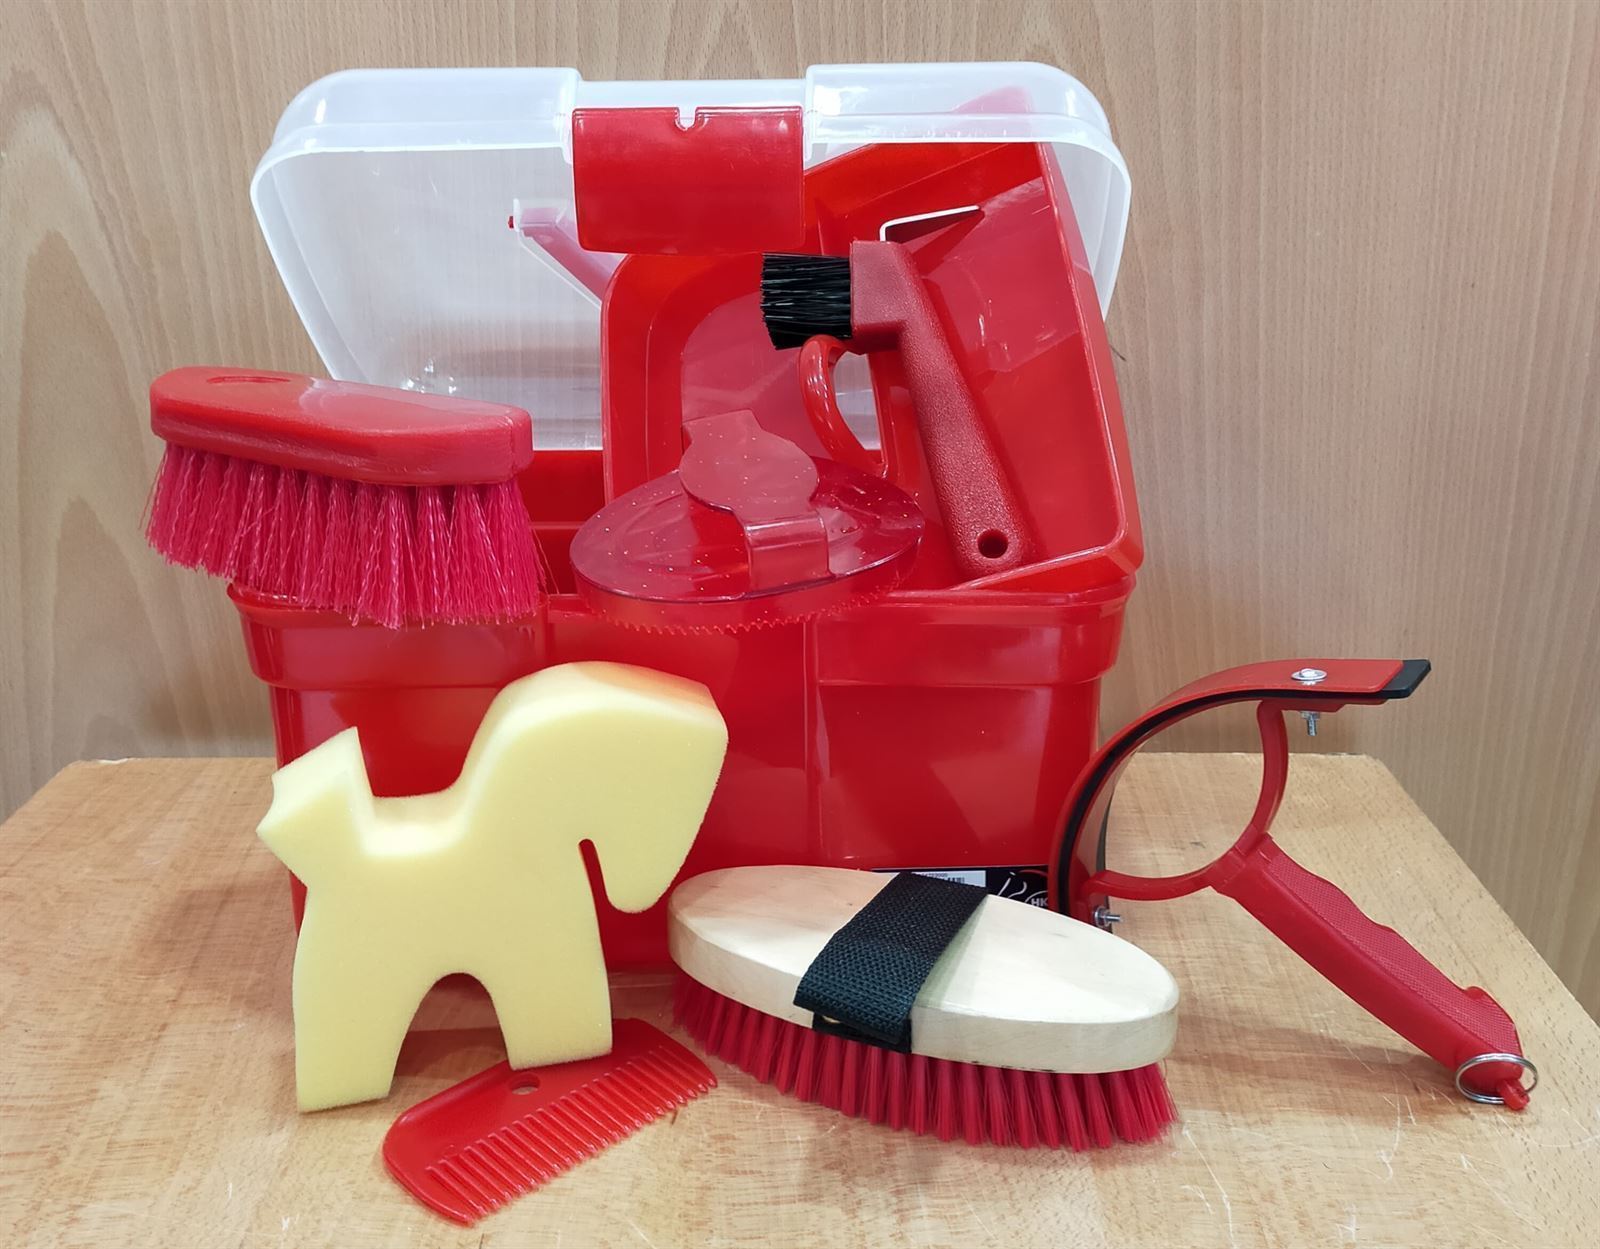 Caja útiles de limpieza HKM Sports Equipment, color rojo - Imagen 3